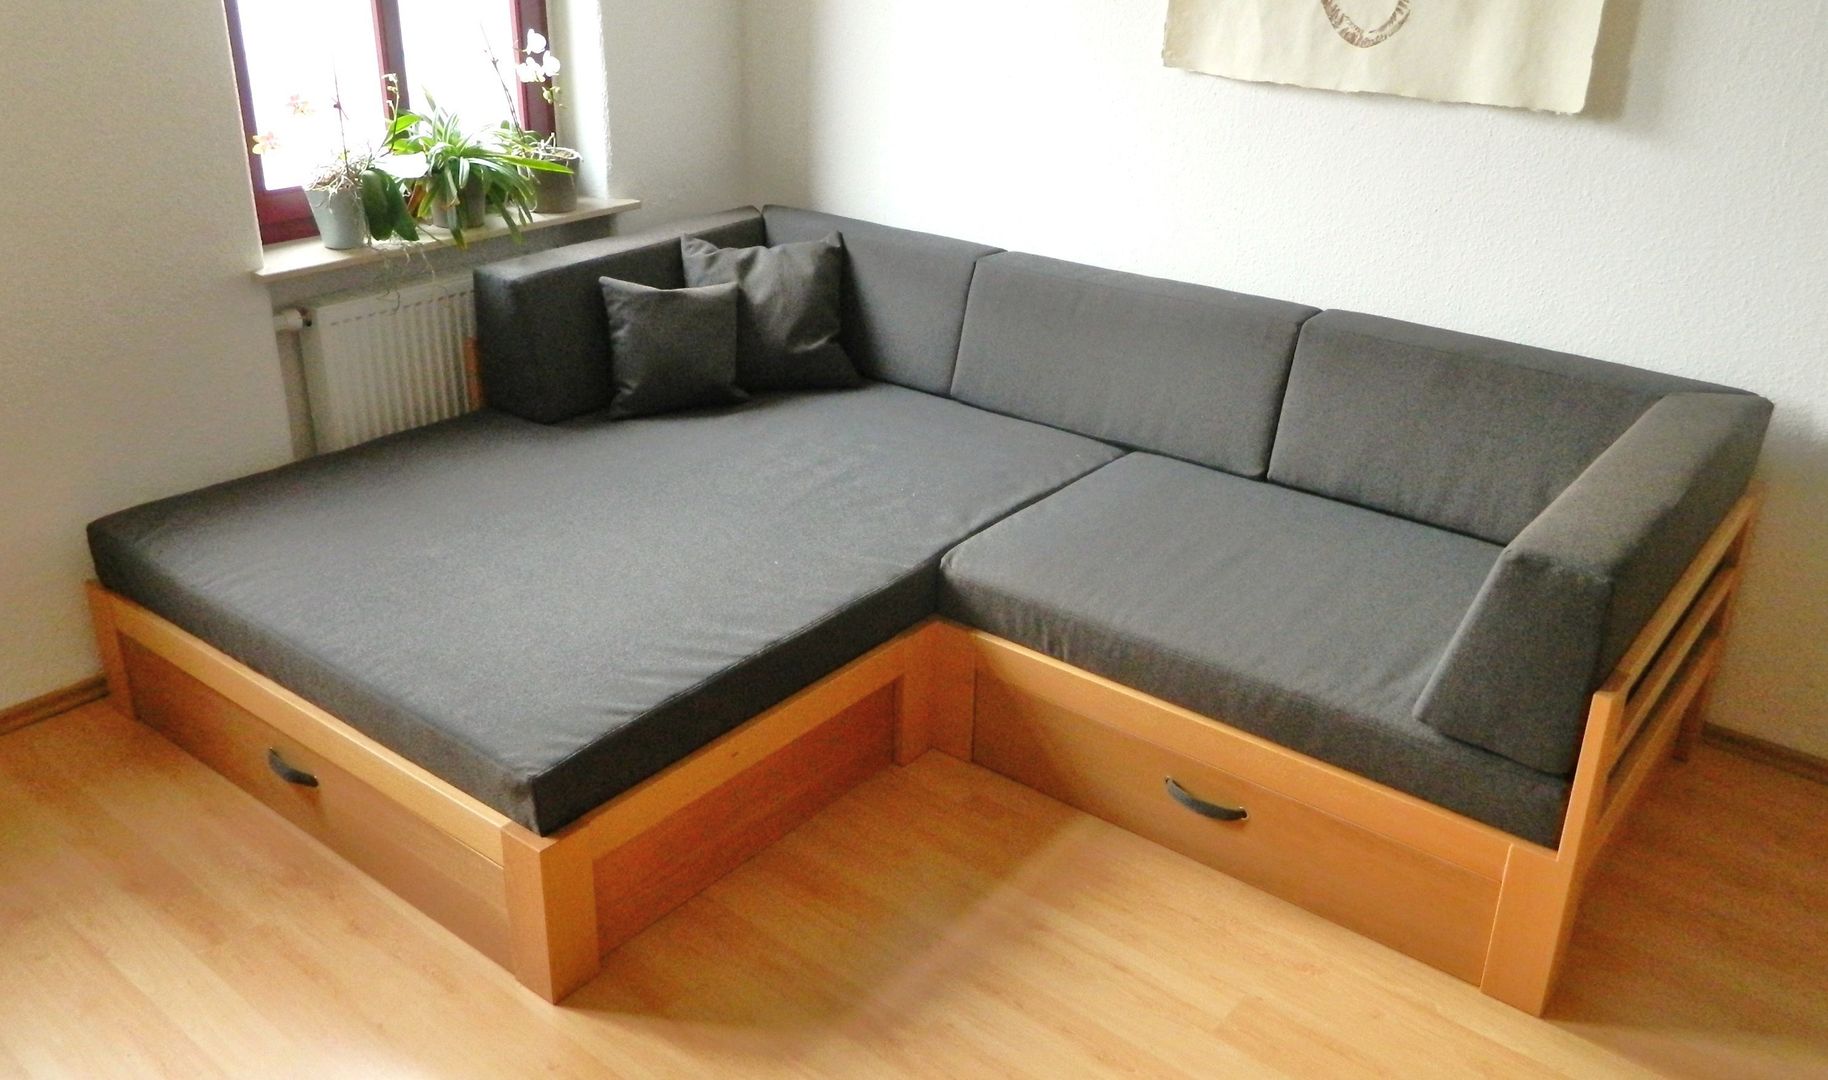 Sofa mit viel Stauraum TRaumkonzepte Raumausstattung und Polsterei Moderne Wohnzimmer Sofas und Sessel